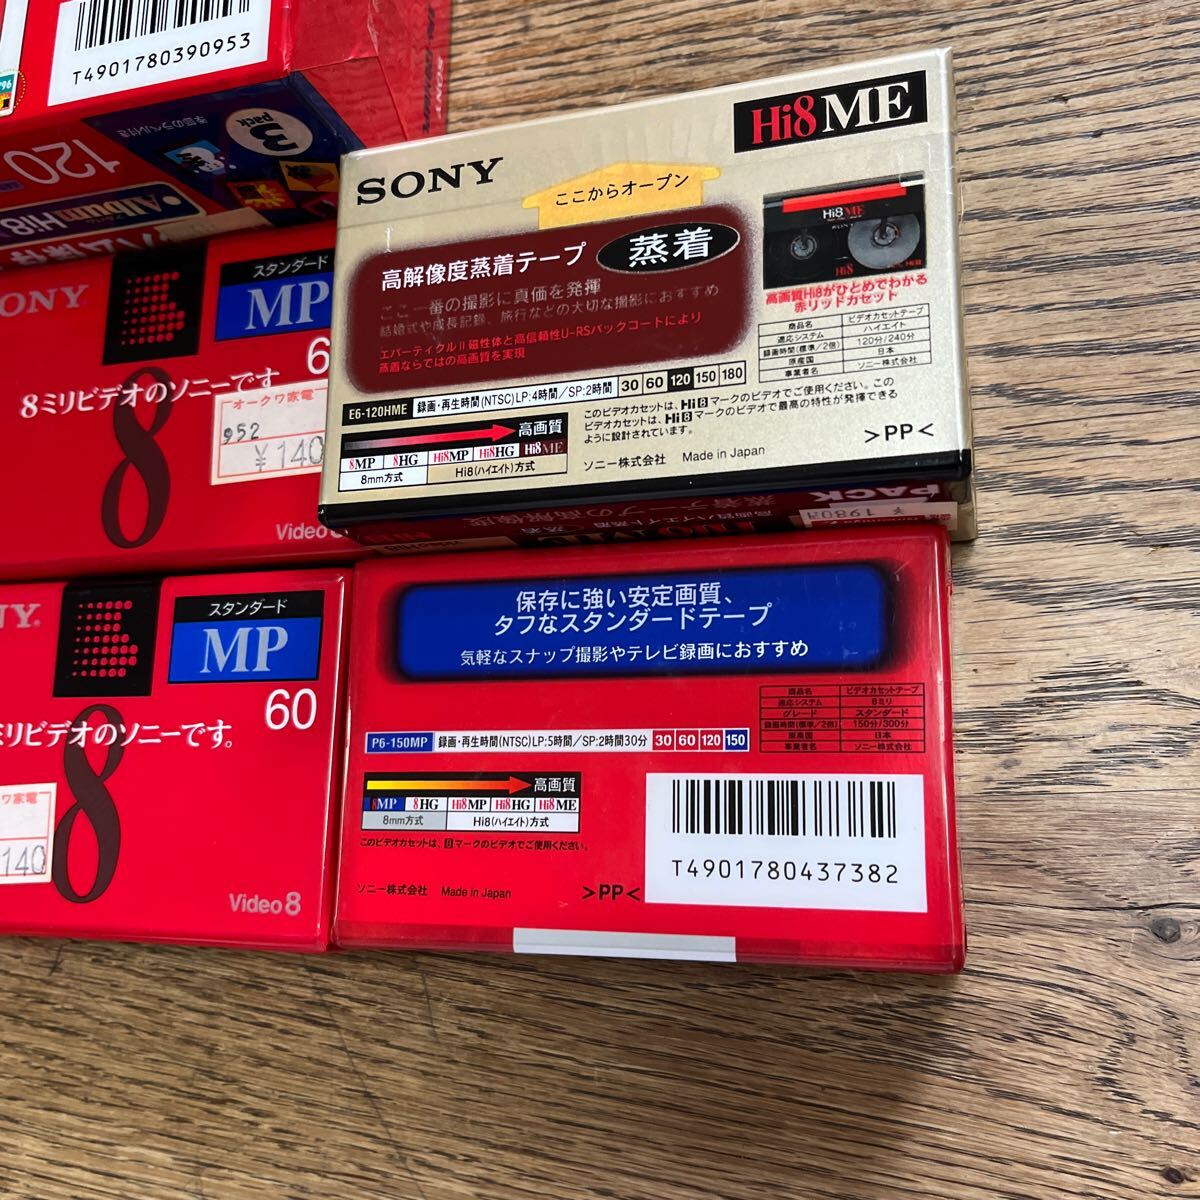 SONY 8 мм видео кассетная лента высокий eito стандартный Sony 